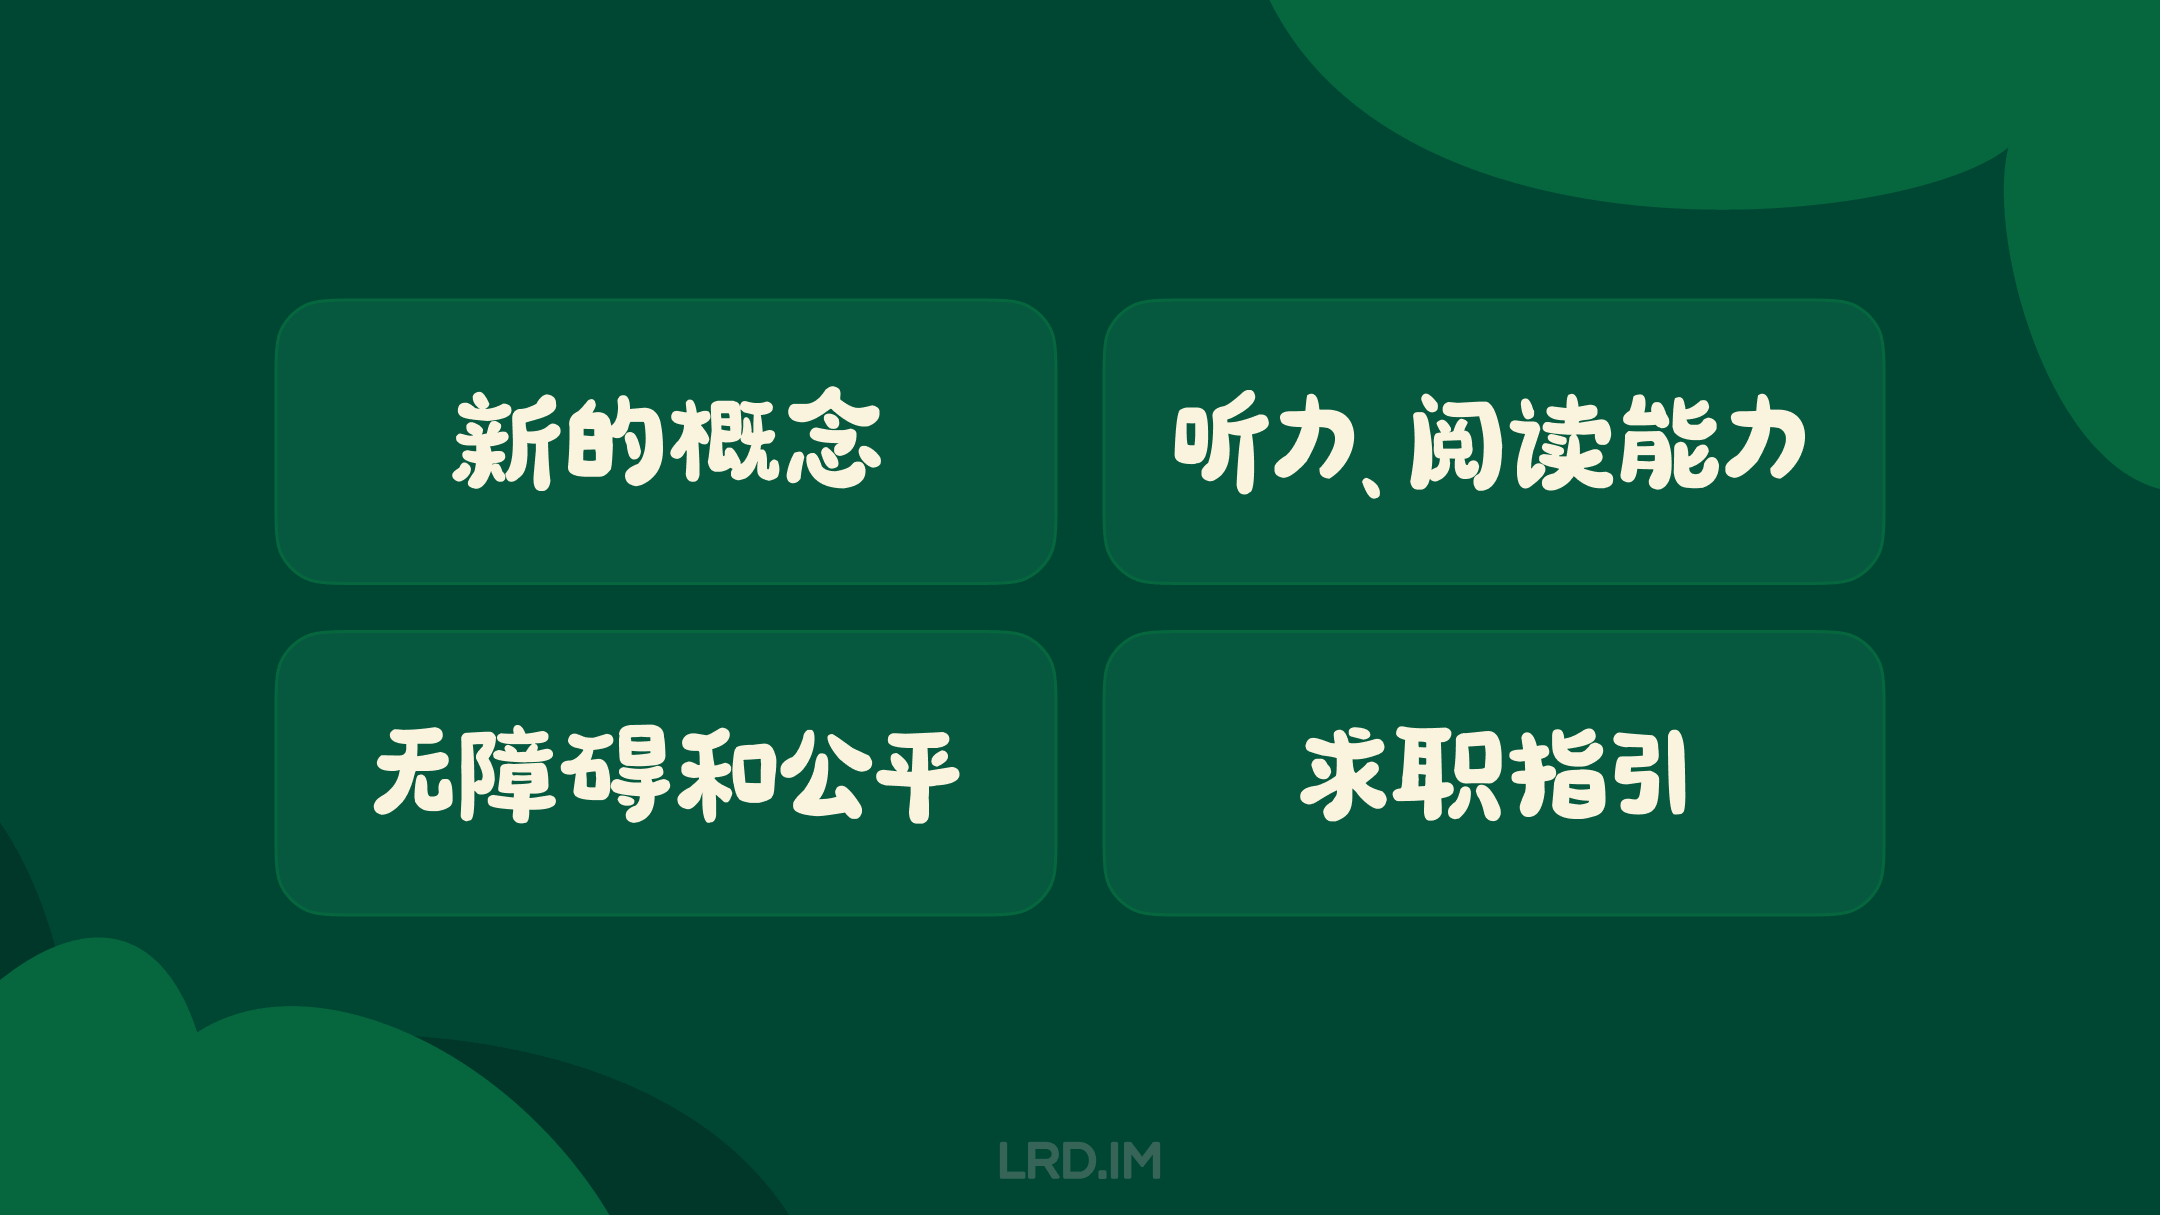 图片中央展示四个方框，每个方框内部都用白色中文文字标识了不同的概念：“新的概念”，“听力、阅读能力”，“无障碍和公平”，“求职指引”。